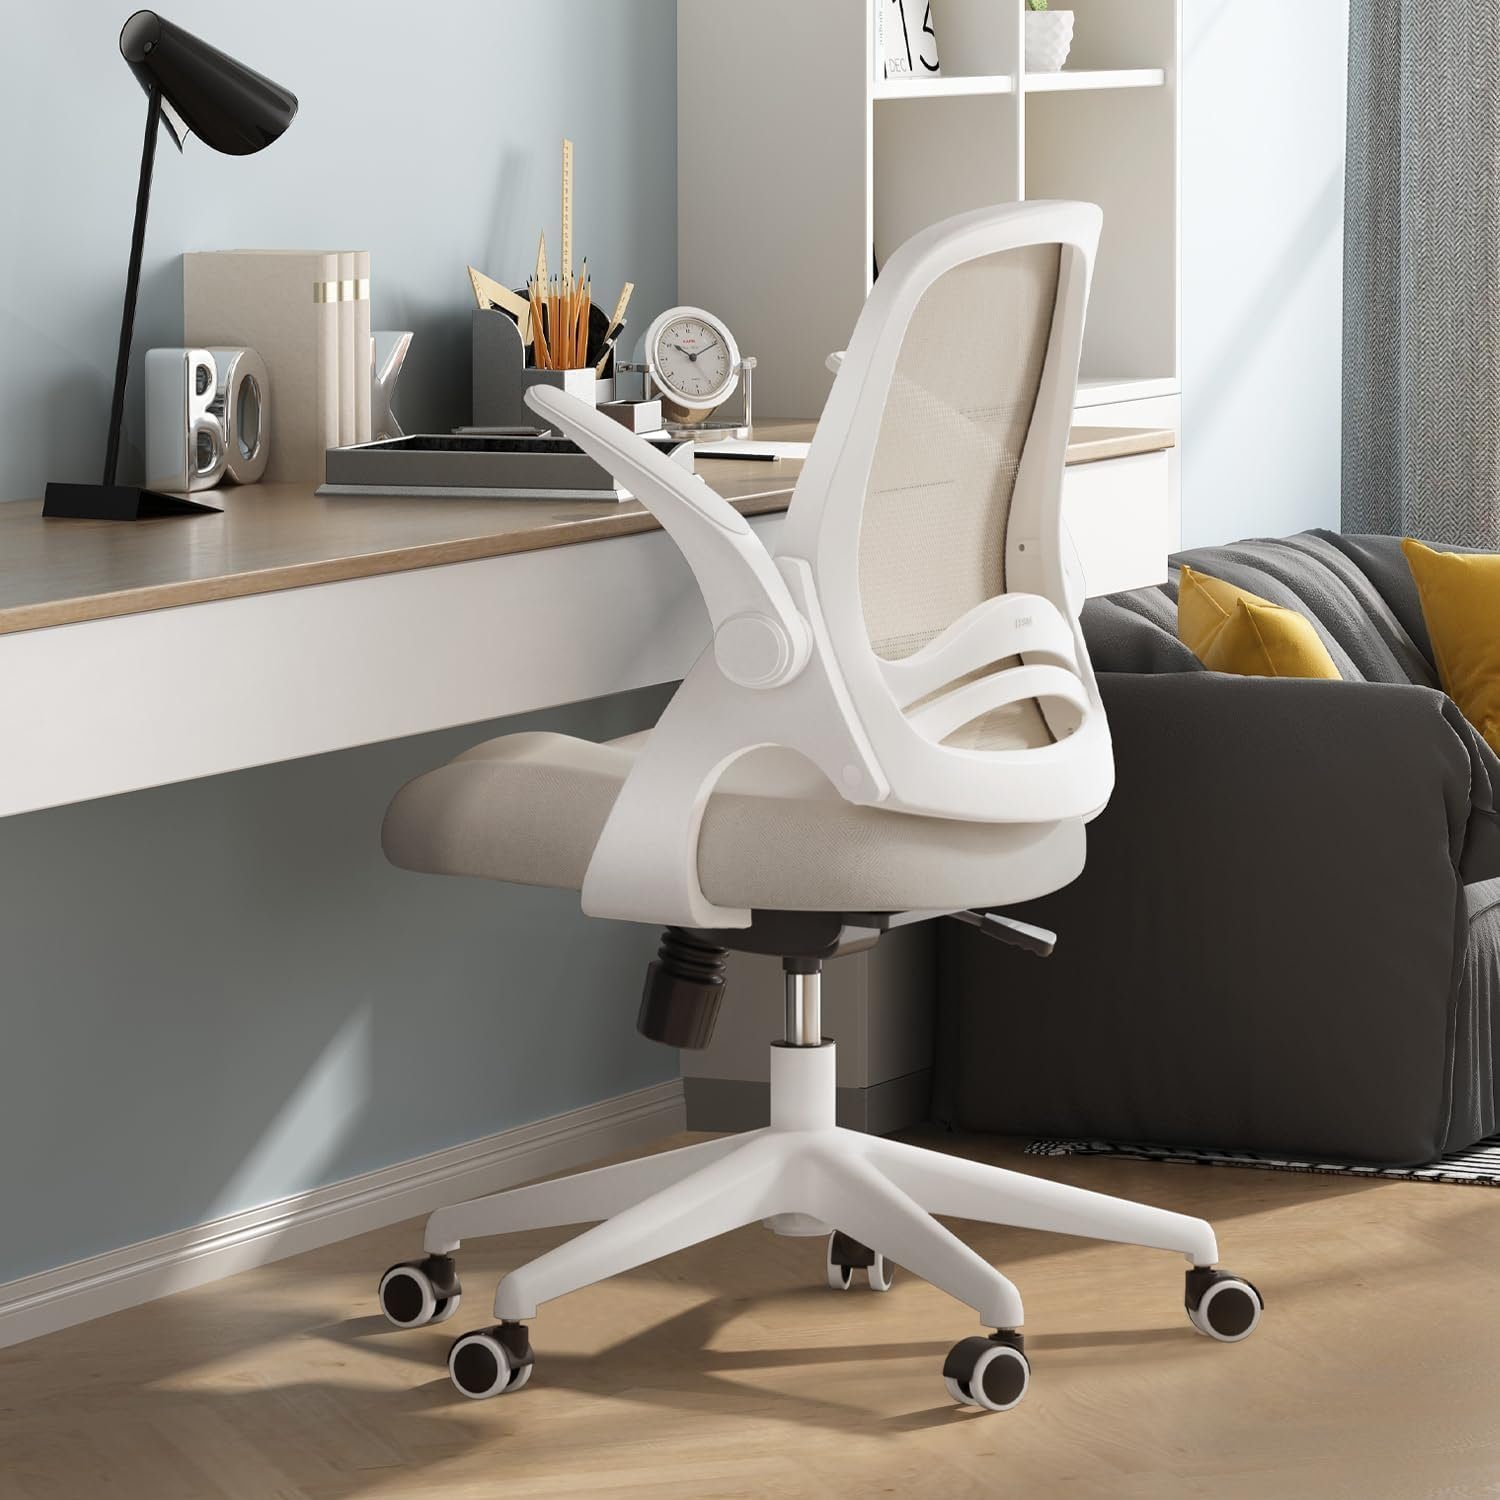 Hbada Bürostuhl (Bürostuhl ergonomisch: Schreibtischstuhl mit verstellbarem Sitz), Bürostuhl Ergonomischer Schreibtischstuhl Arbeitsstuhl Drehstuhl